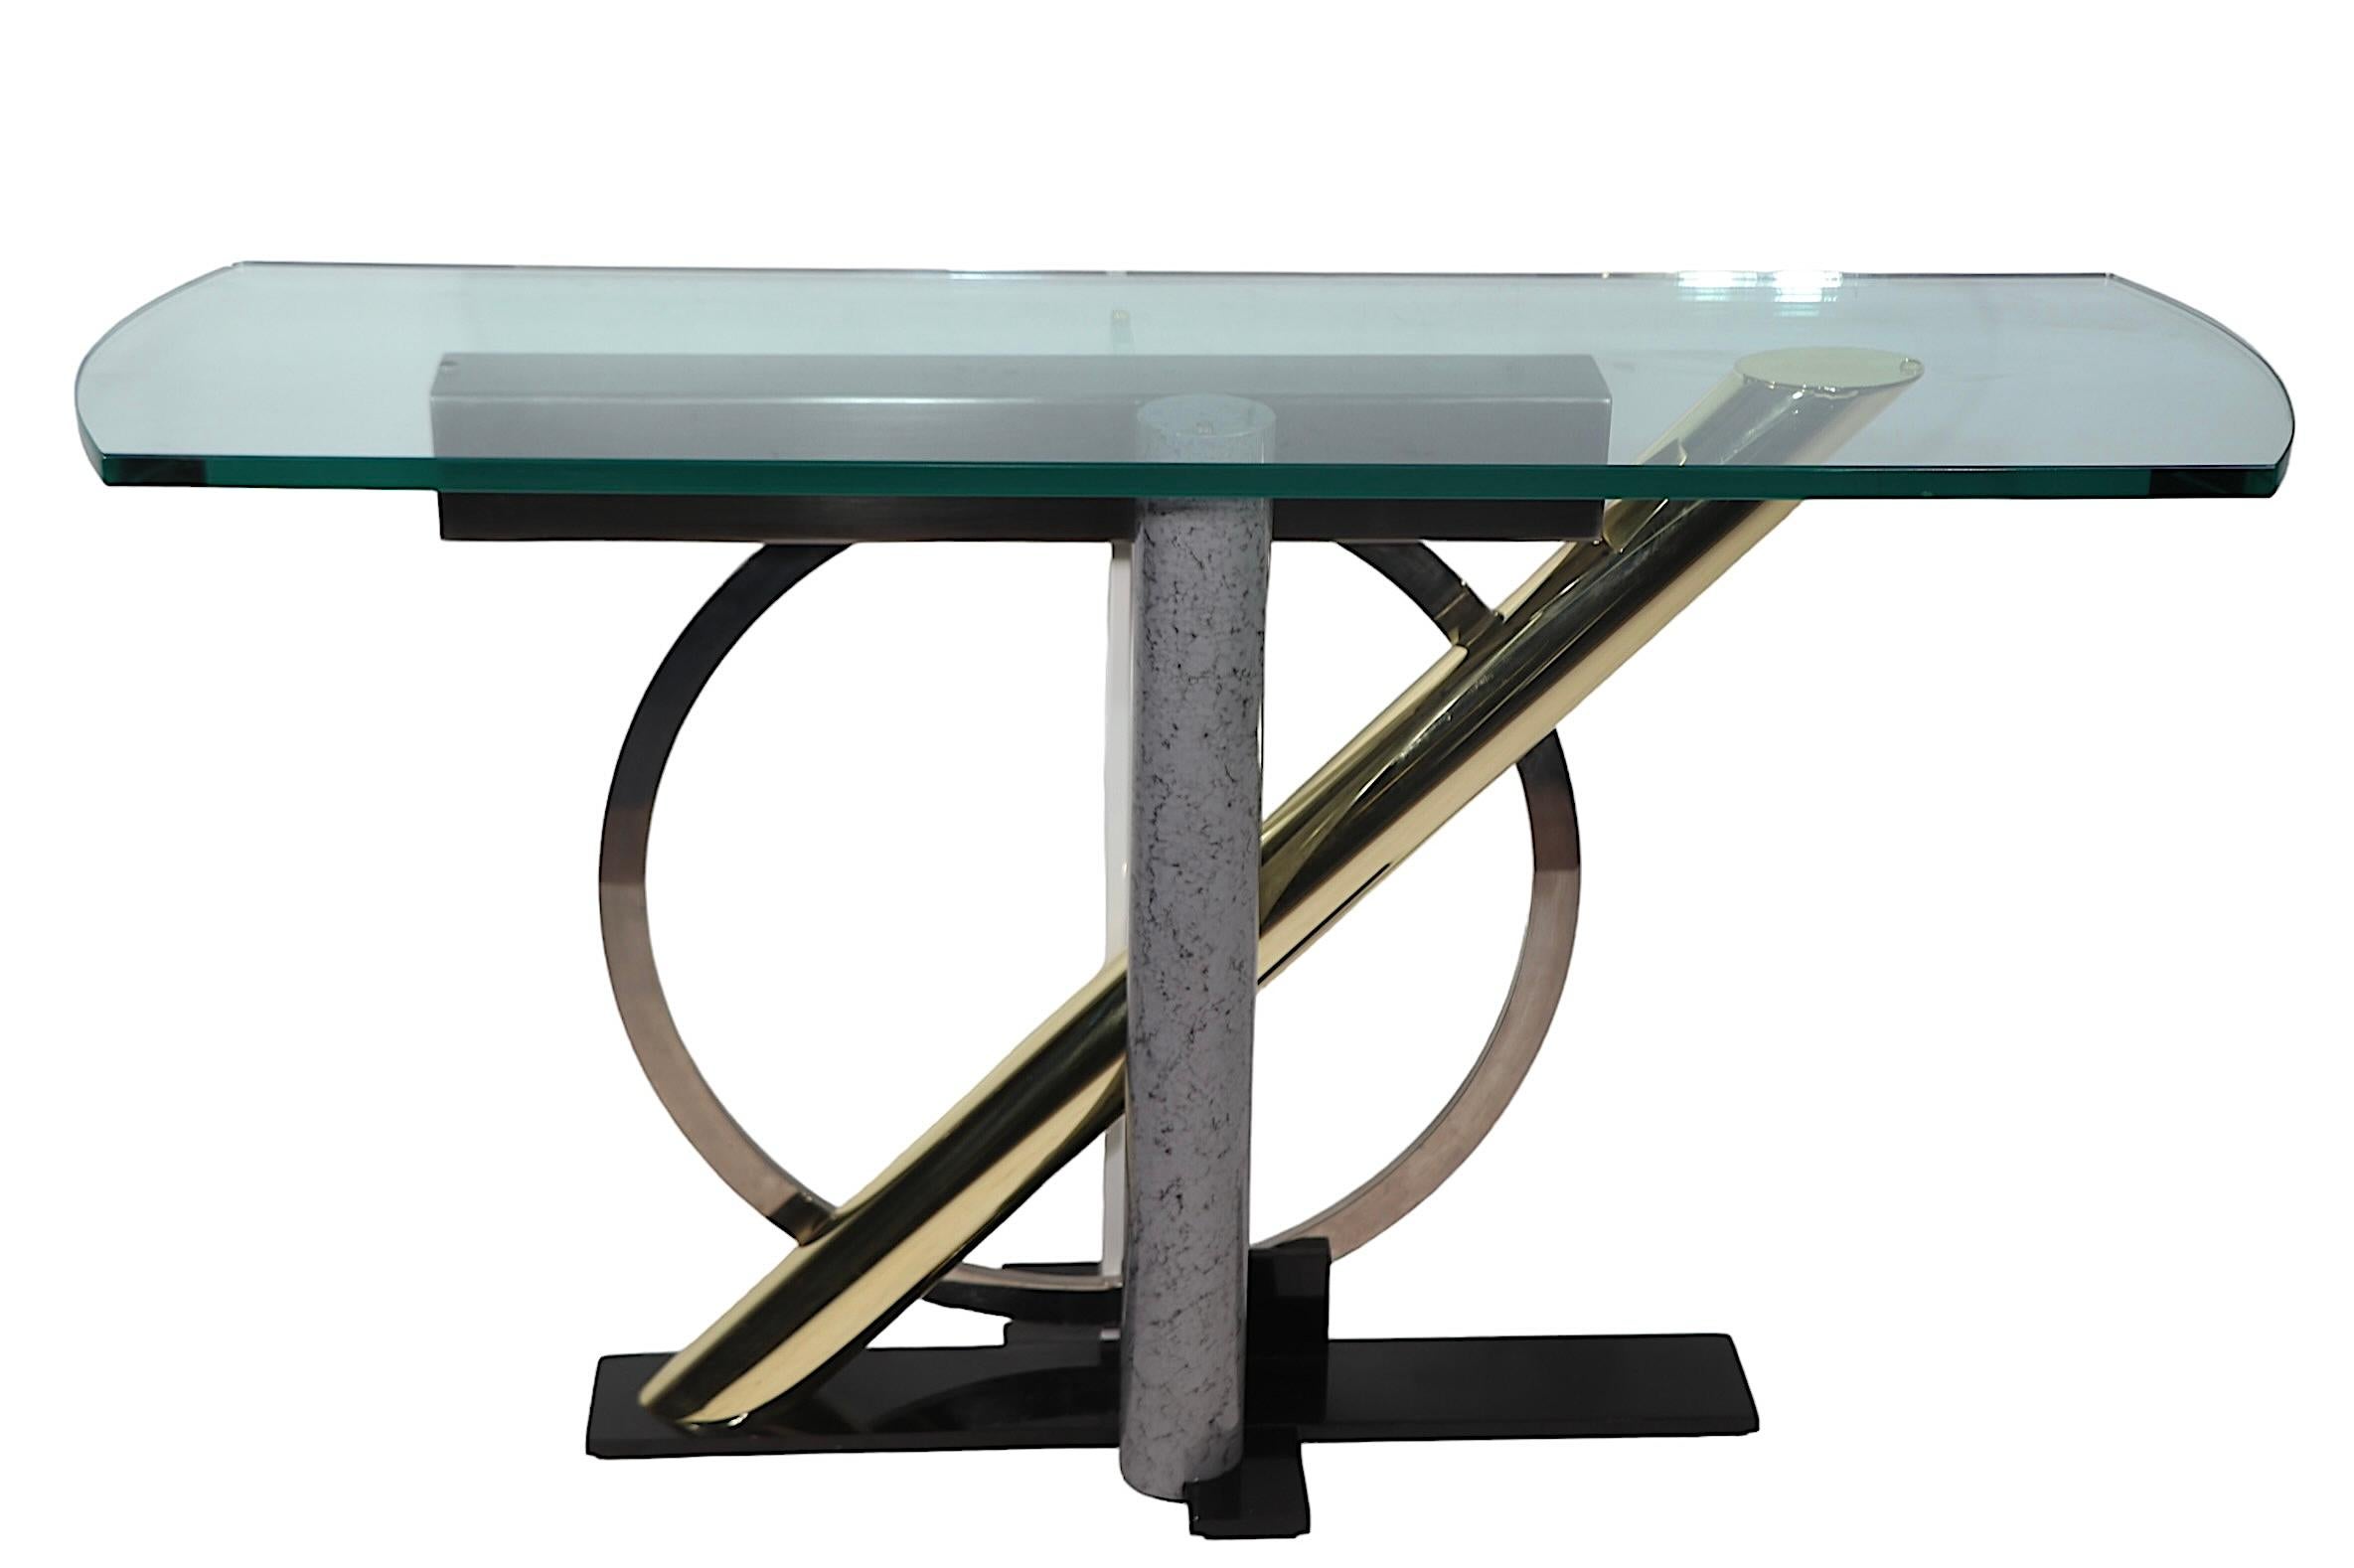 Table console emblématique du design Post Modern par Kaizo Oto pour le Design Institute America, circa 1980's. La table est dotée d'un épais plateau en verre façonné qui repose sur une base en métal mixte stylisé. Cet exemplaire est en excellent